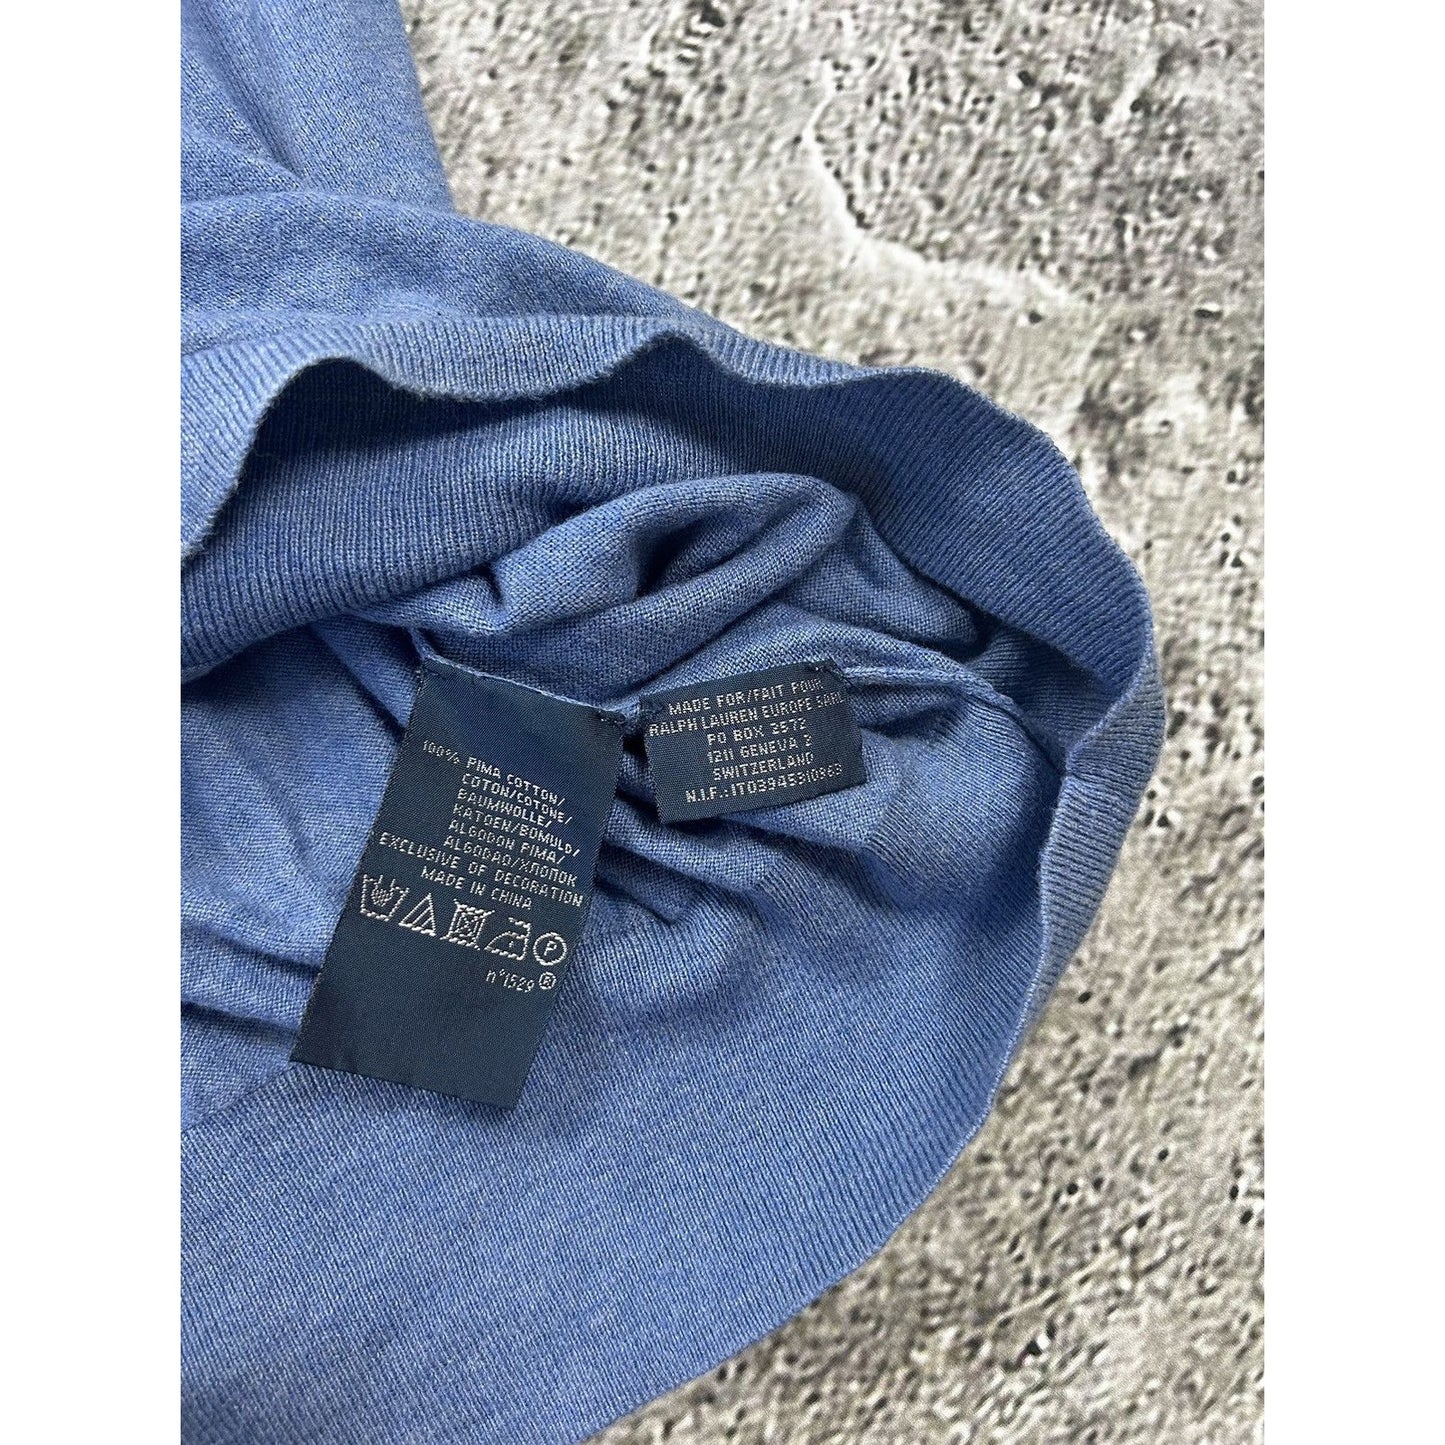 Polo Ralph Lauren vintage blue sweater cotton